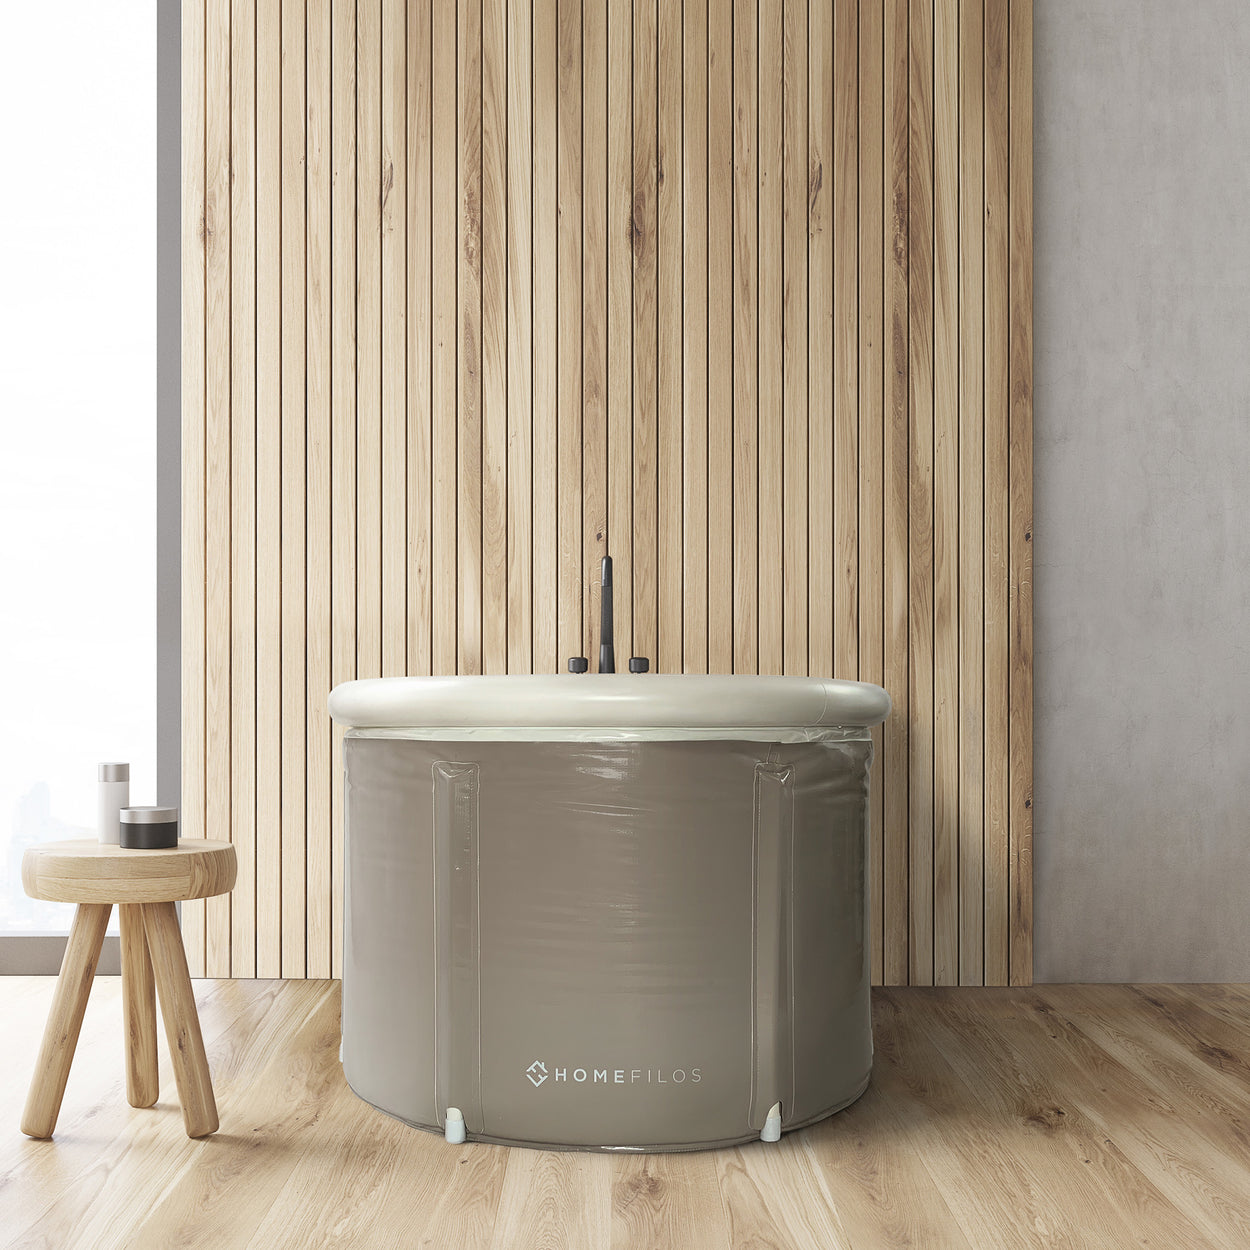 Tiny Bath Tubs For Your Tiny Home As An Alternative To A Standard Tub -  Tiny Portable Cedar Cabins